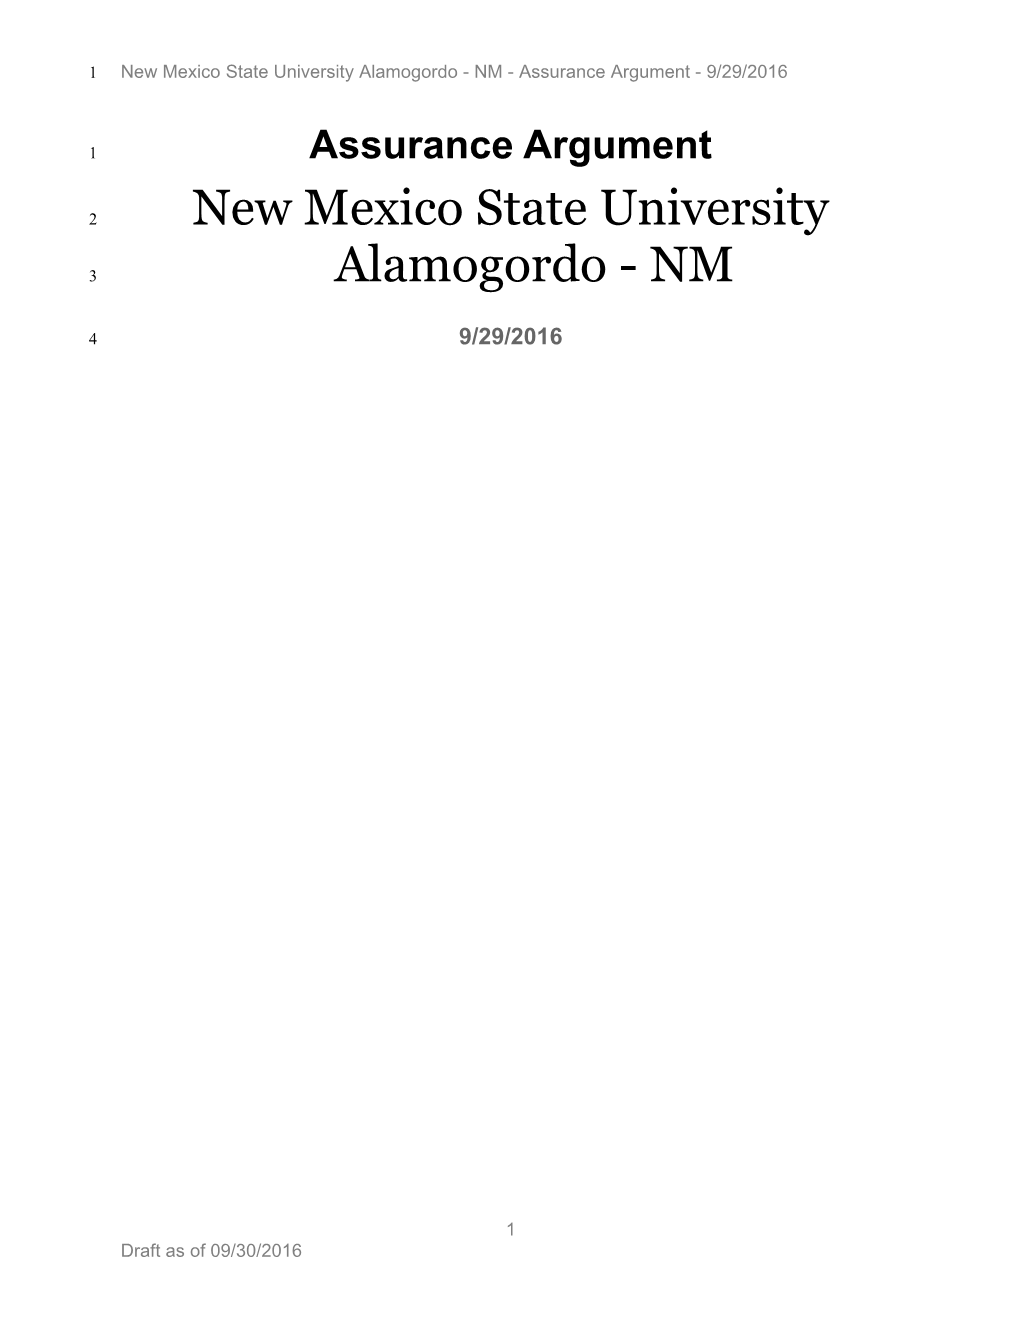 New Mexico State University Alamogordo - NM